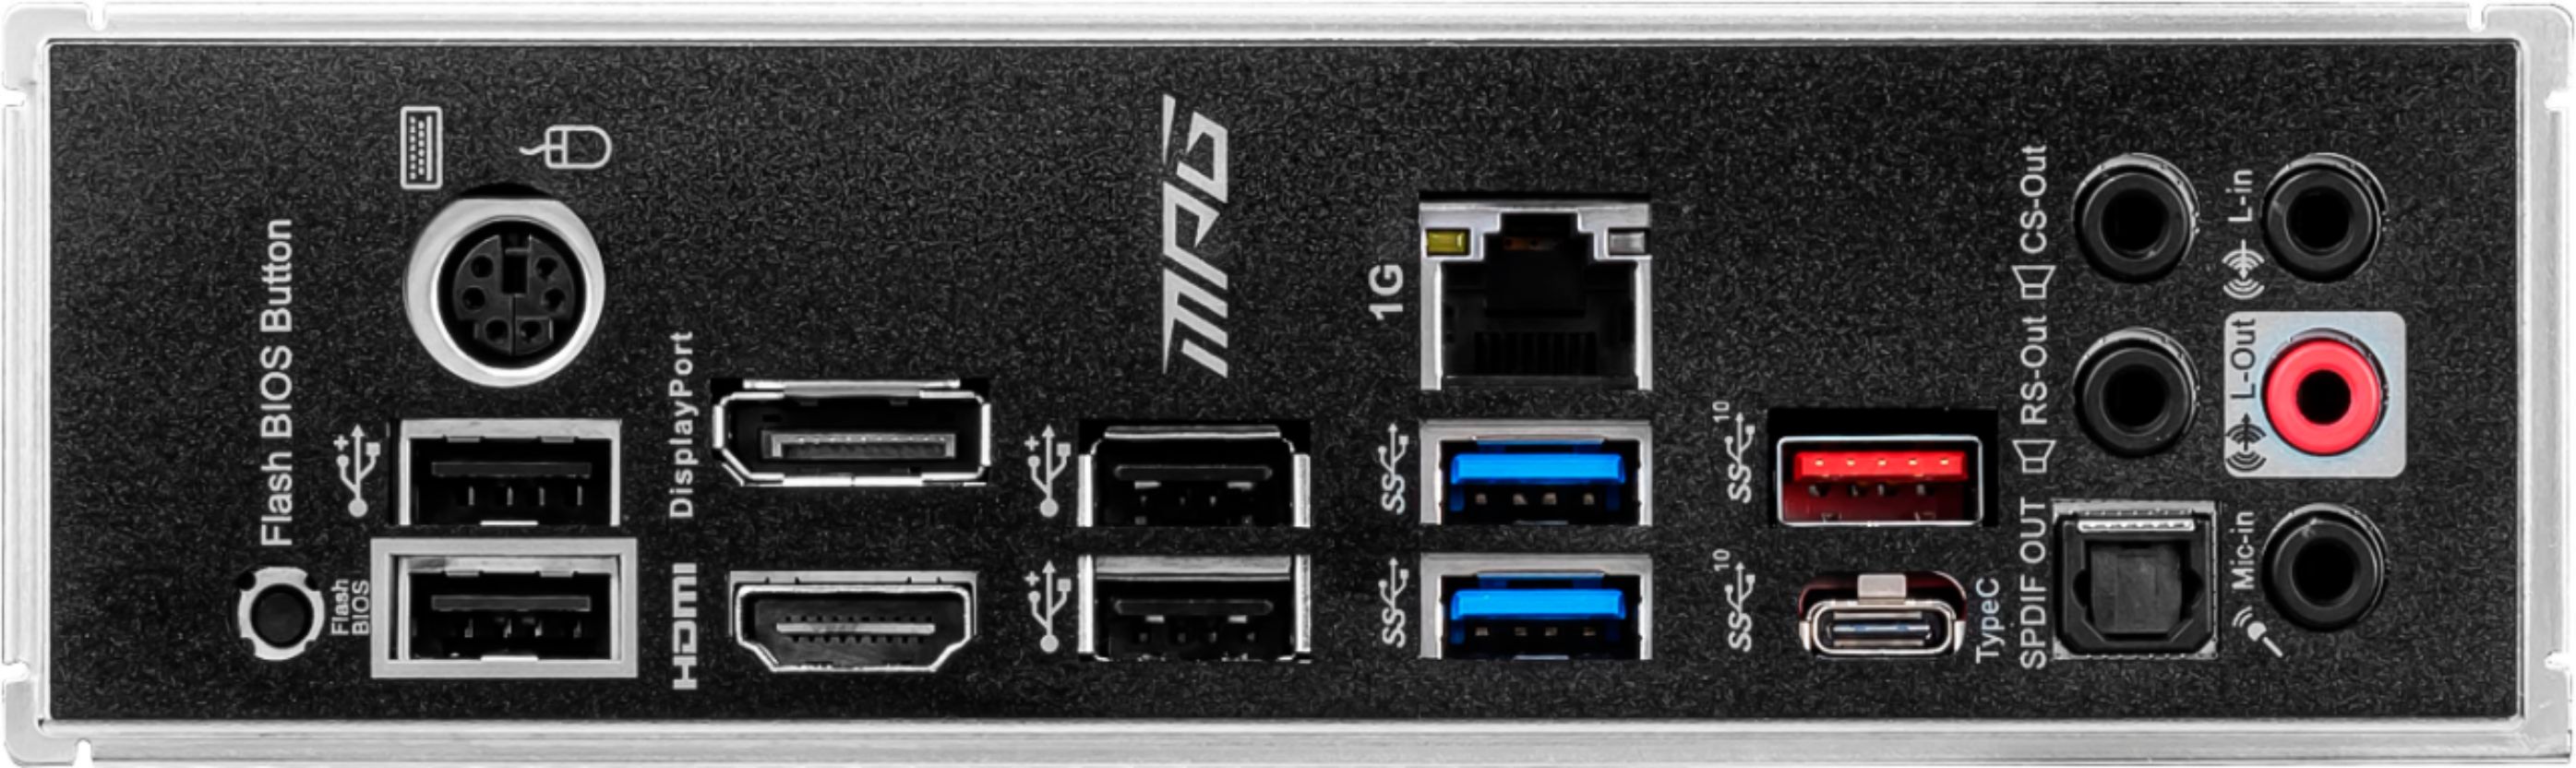 MSI B550 GAMING PLUS (Socket AM4) USB-C Gen 2 AMD ATX GAMING